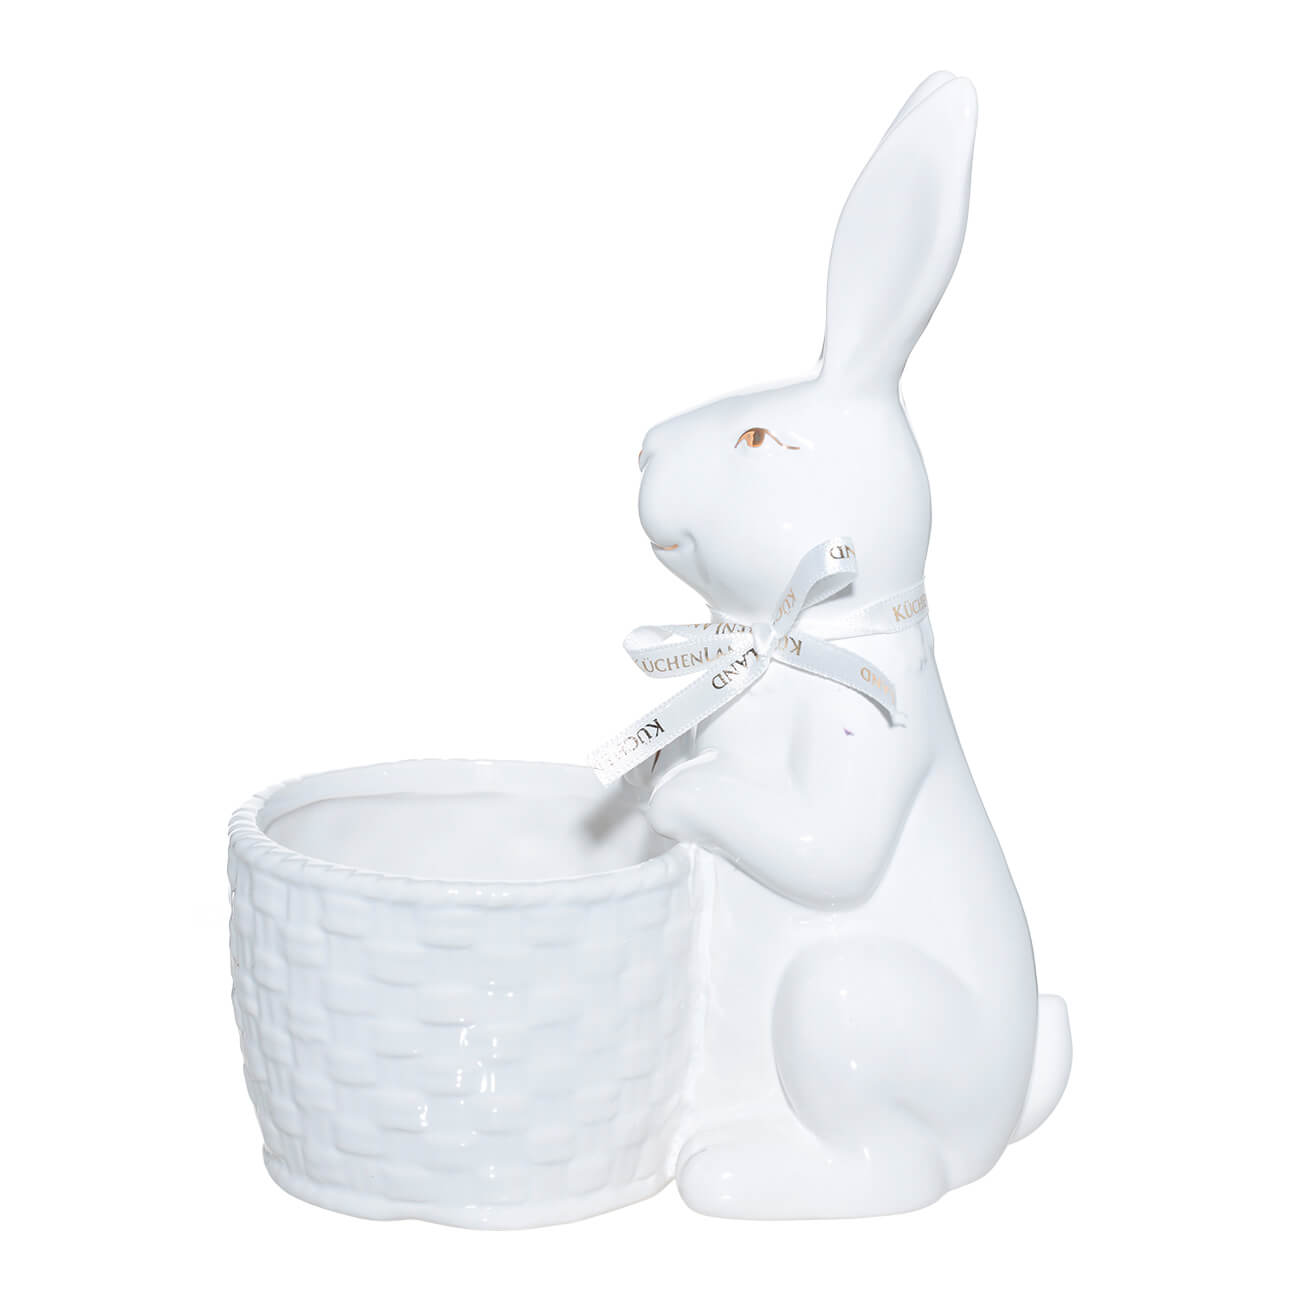 Конфетница, 23x17 см, керамика, белая, Кролик с корзиной, Easter gold